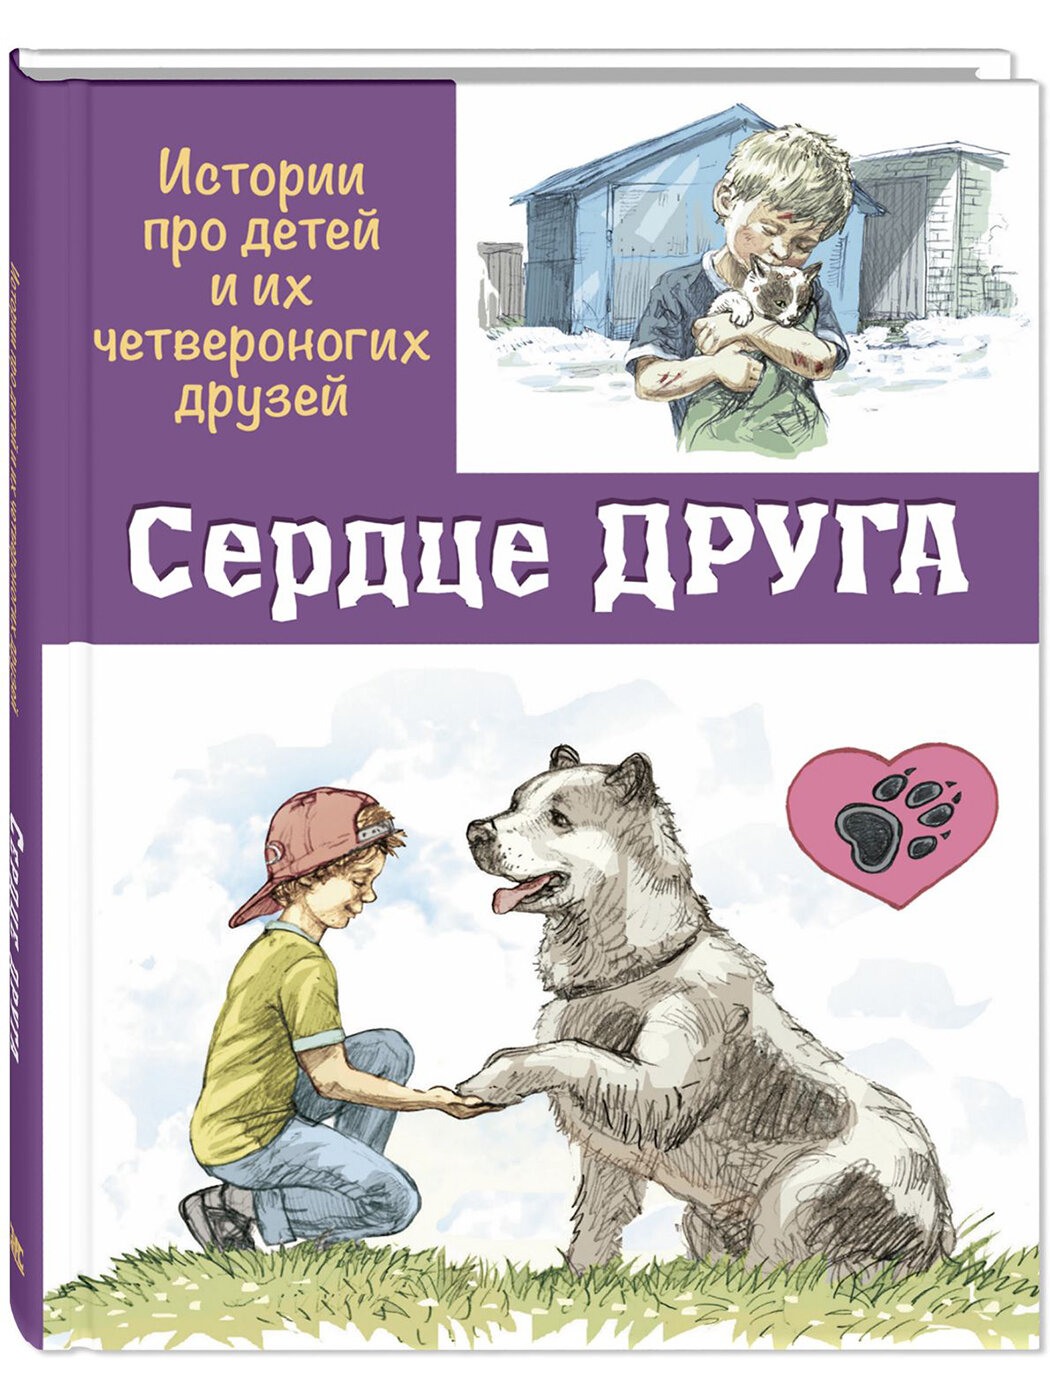 Книга Сердце друга : истории про детей и их четвероногих друзей